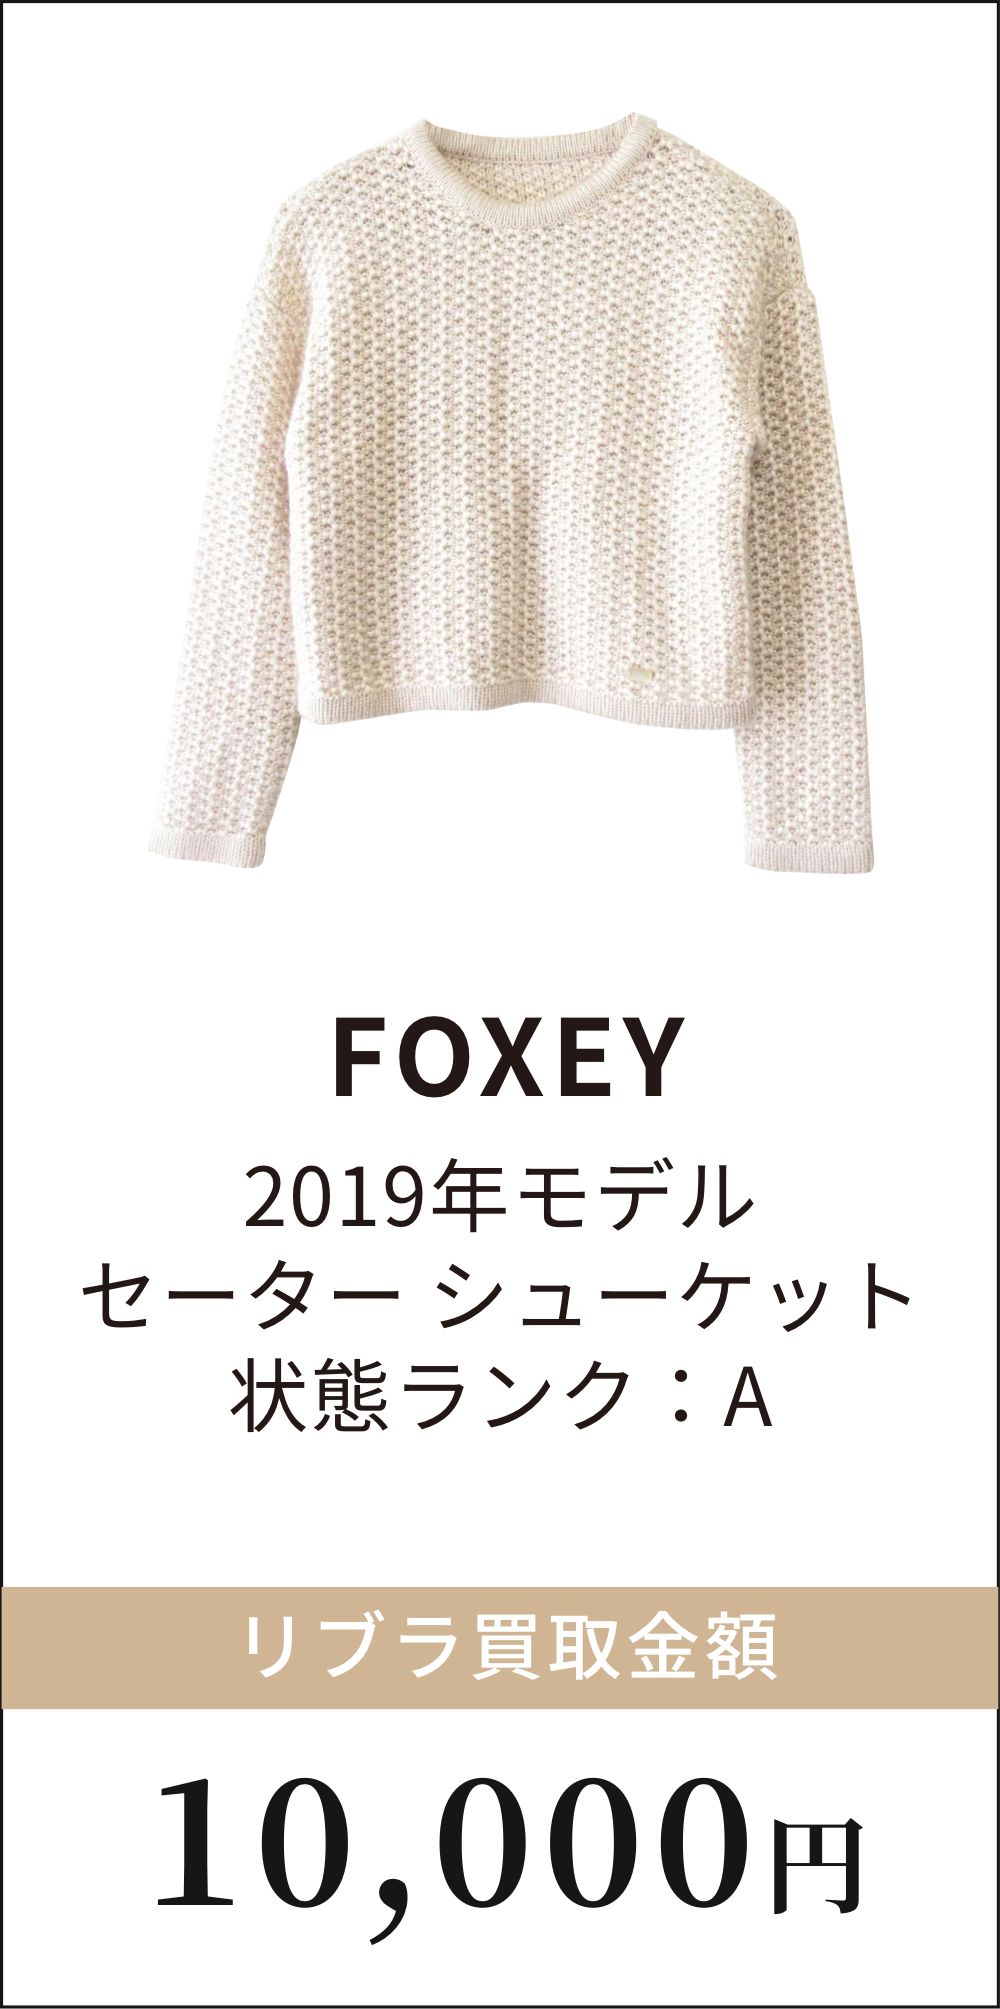 FOXEY 2019年モデル セーター シューケット